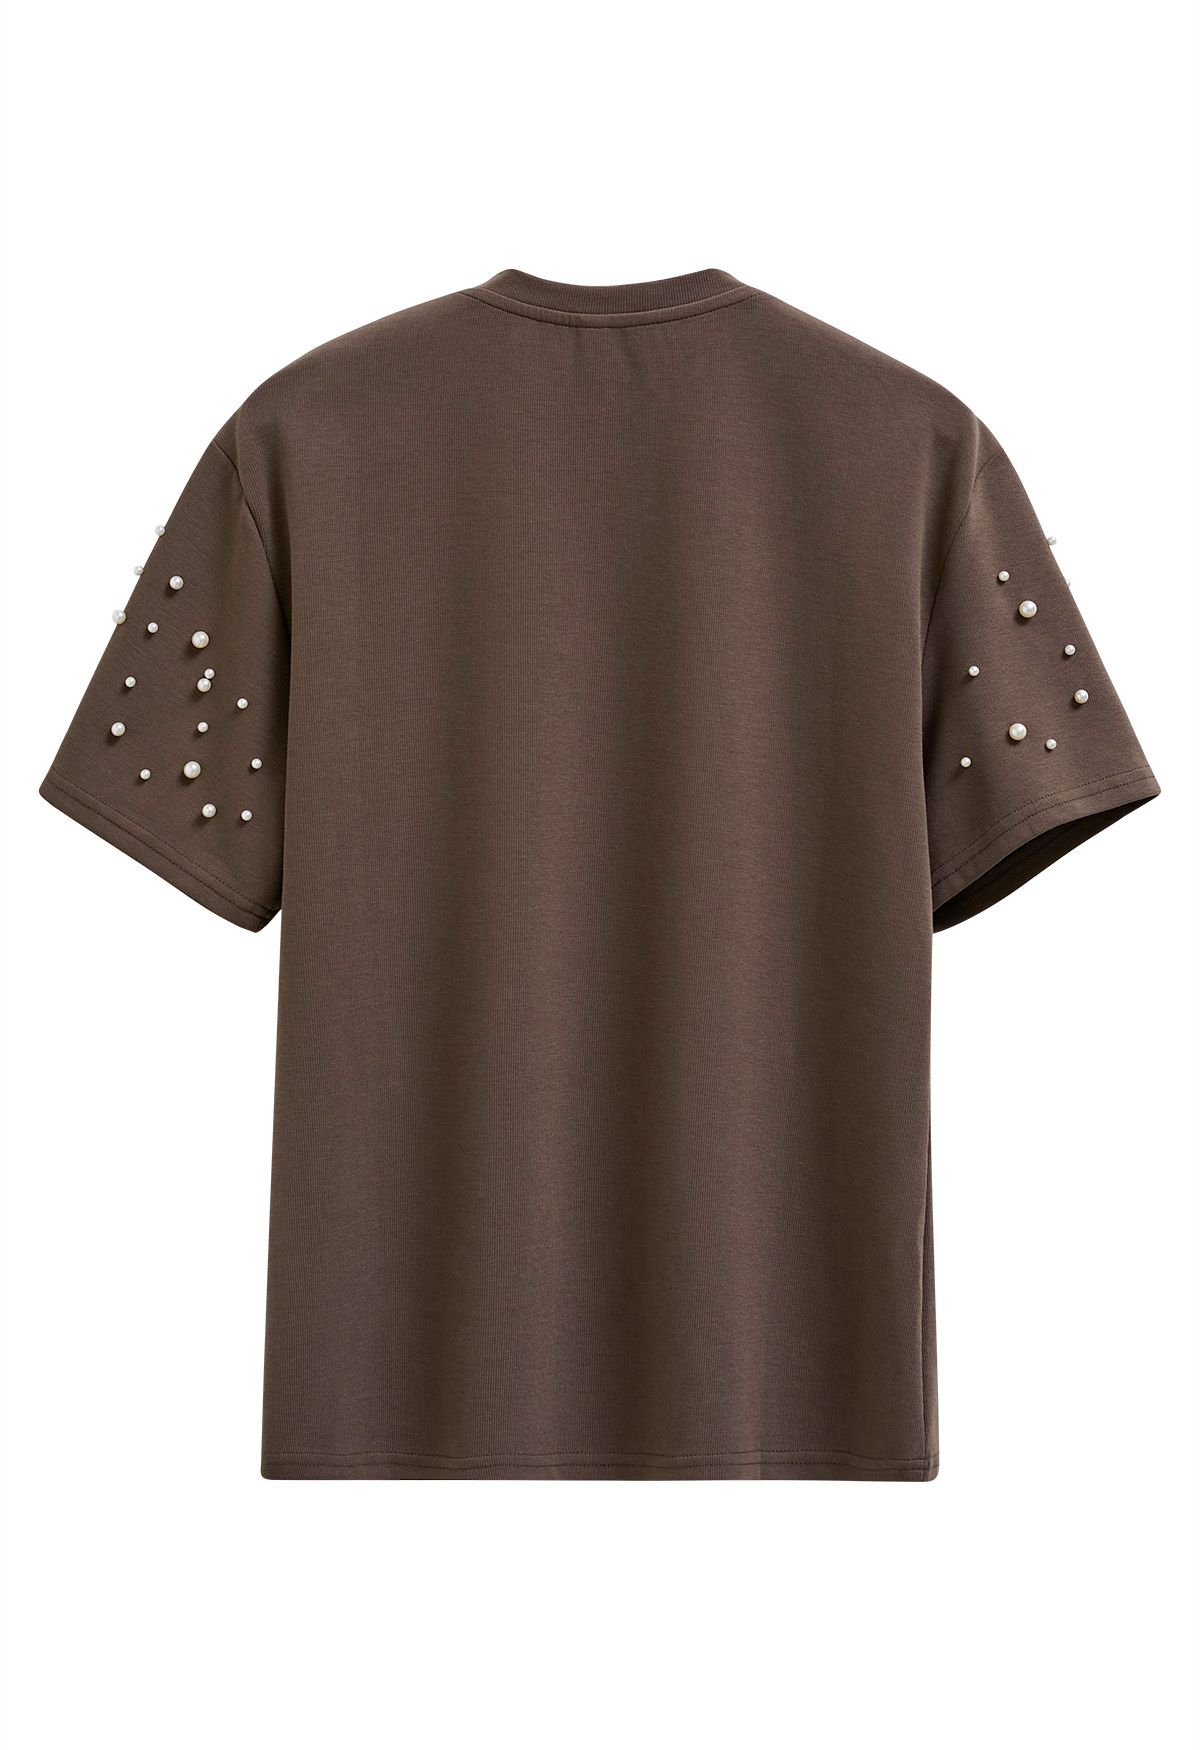 Anspruchsvolles T-Shirt mit Perlenbesatz in Braun